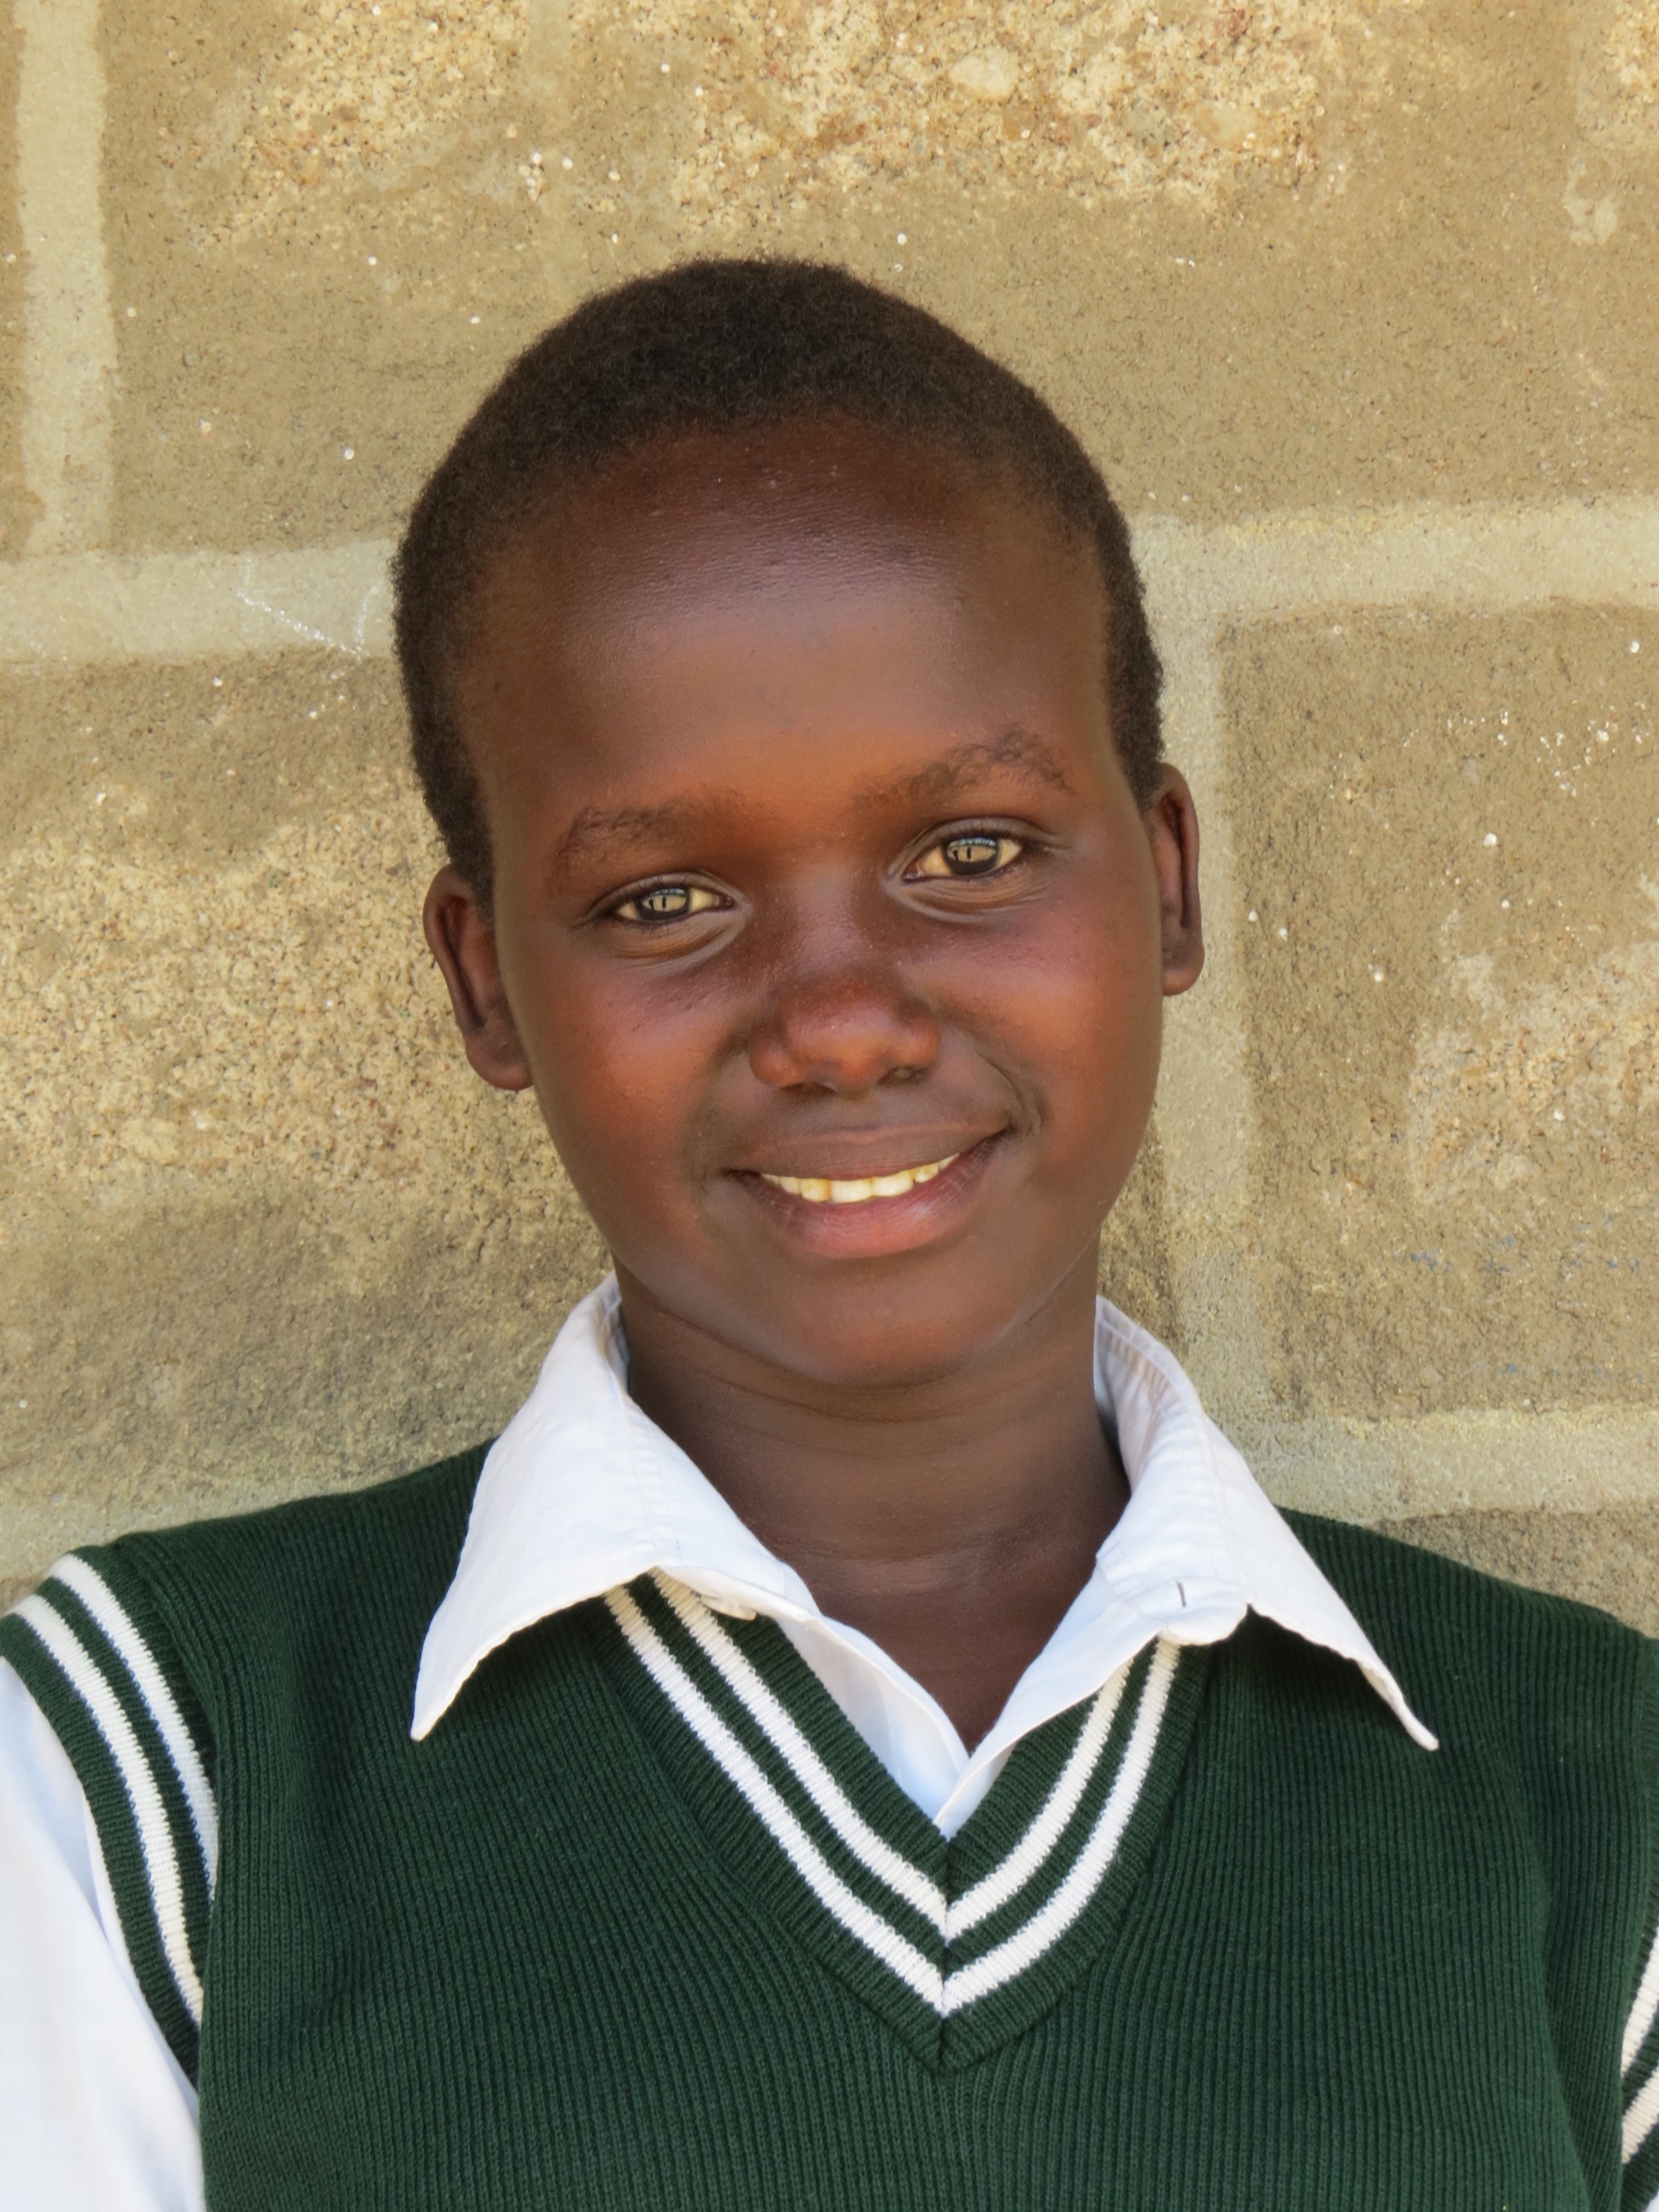   Sofia Letikaa   Secondary School Scholarship recipient from Baringo  